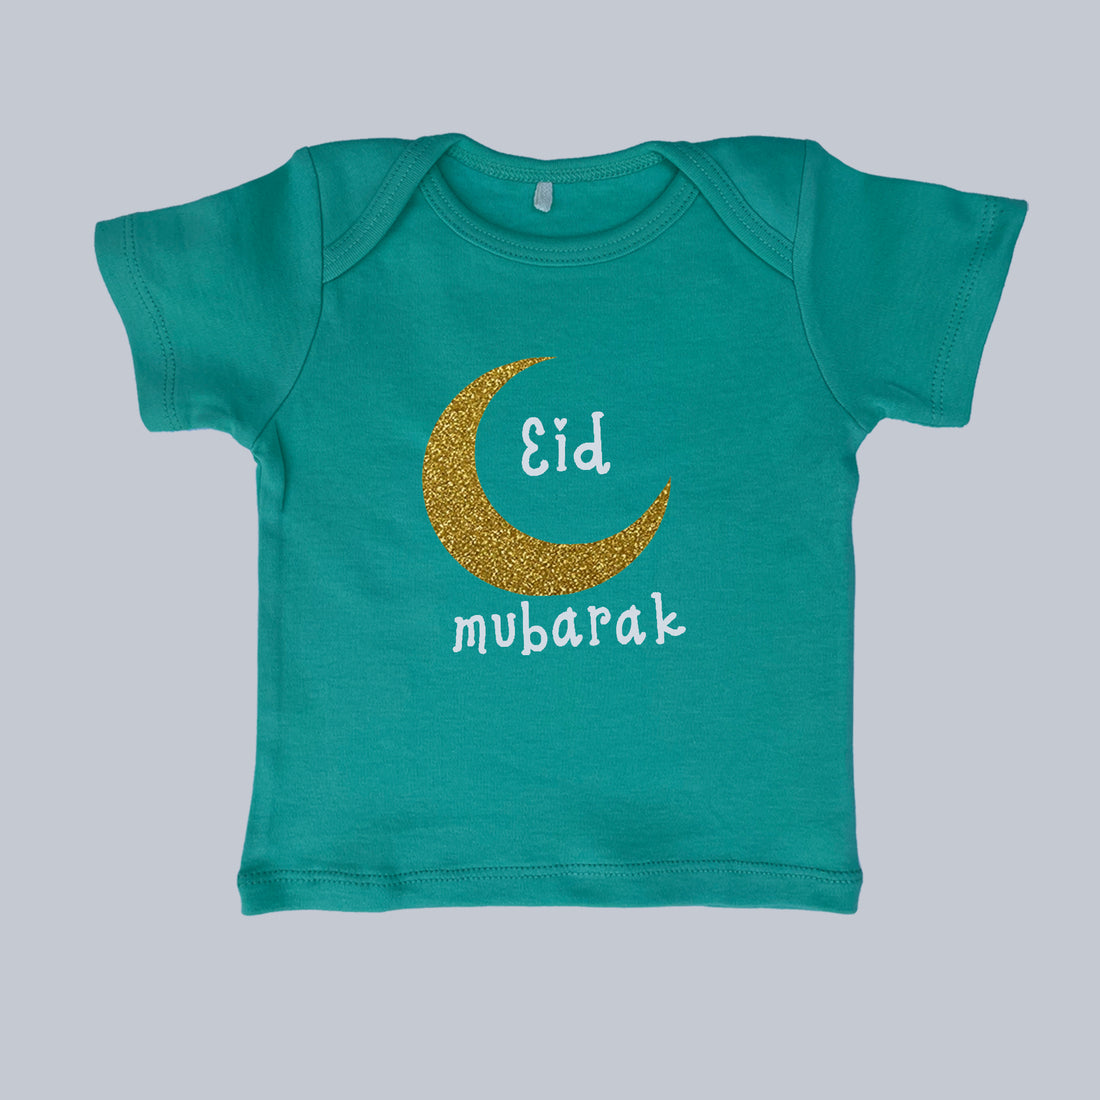 Eid tshirt 